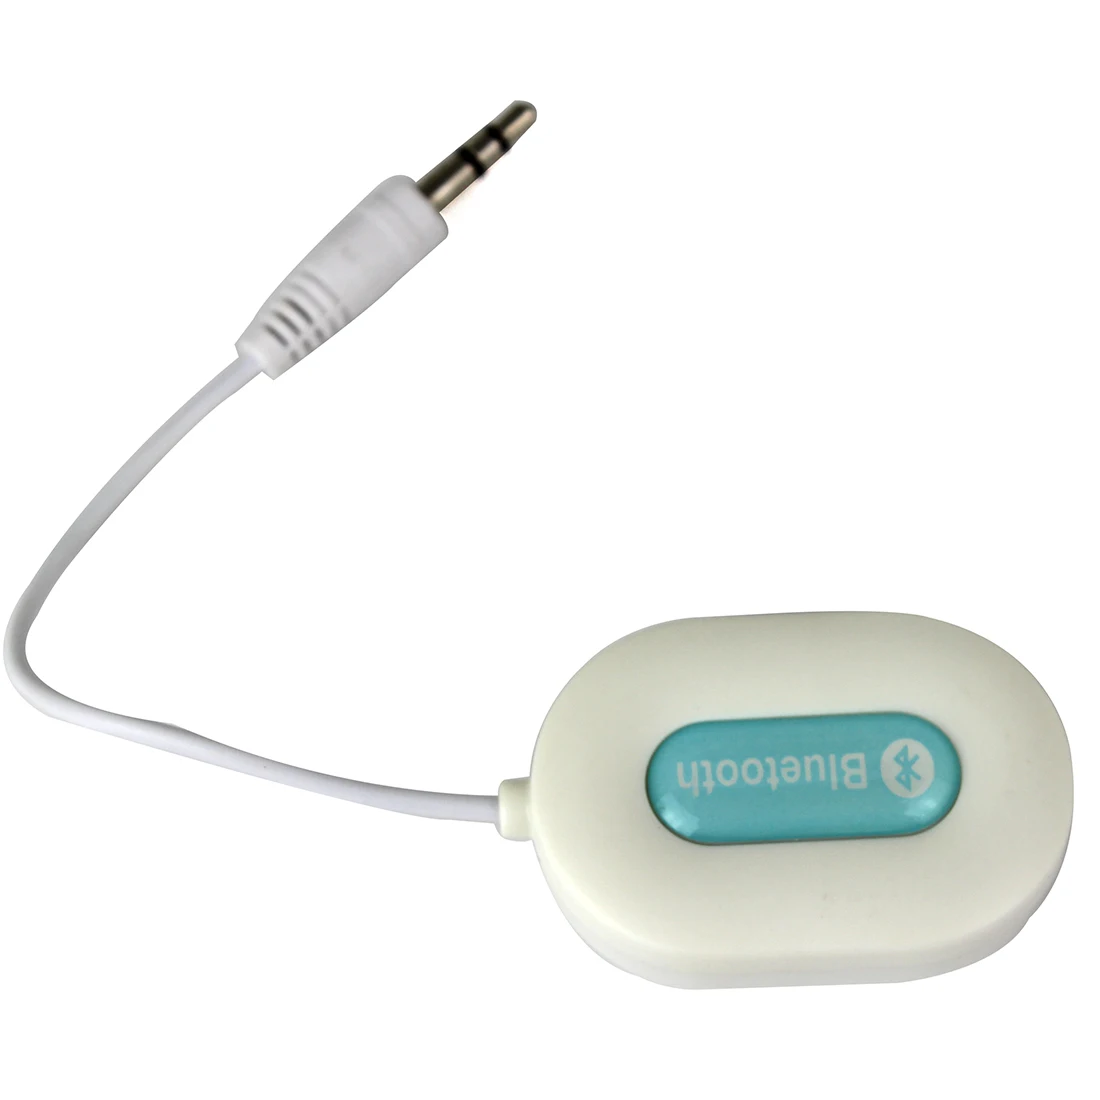 NOYOKERE новые акции мини 3,5 мм Bluetooth аудио приемник A2DP стерео для смартфонов планшет белый